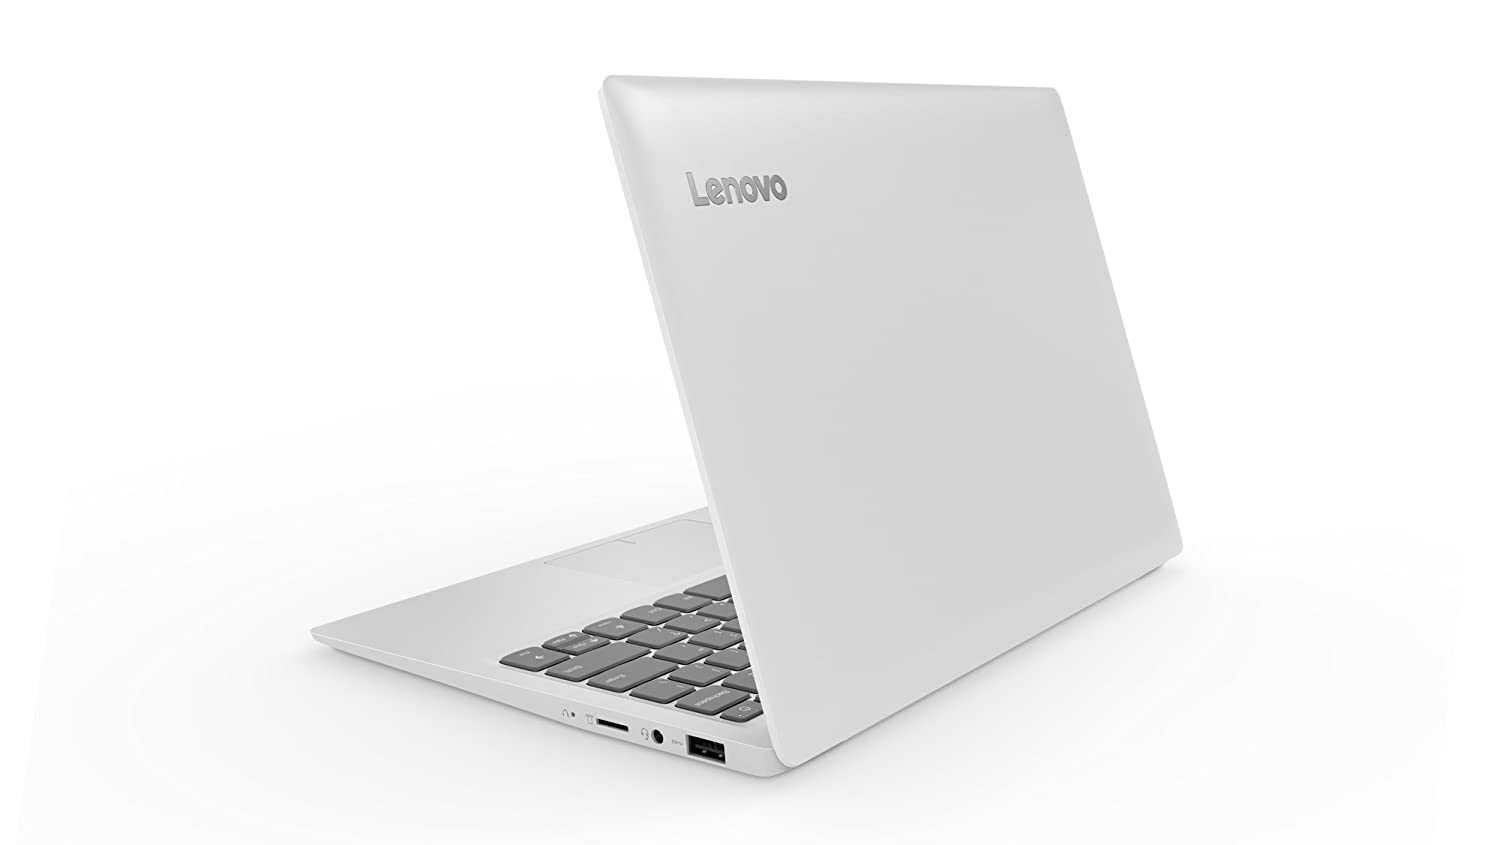 Ноутбук asus vivobook pro n705un-gc112t — купить, цена и характеристики, отзывы